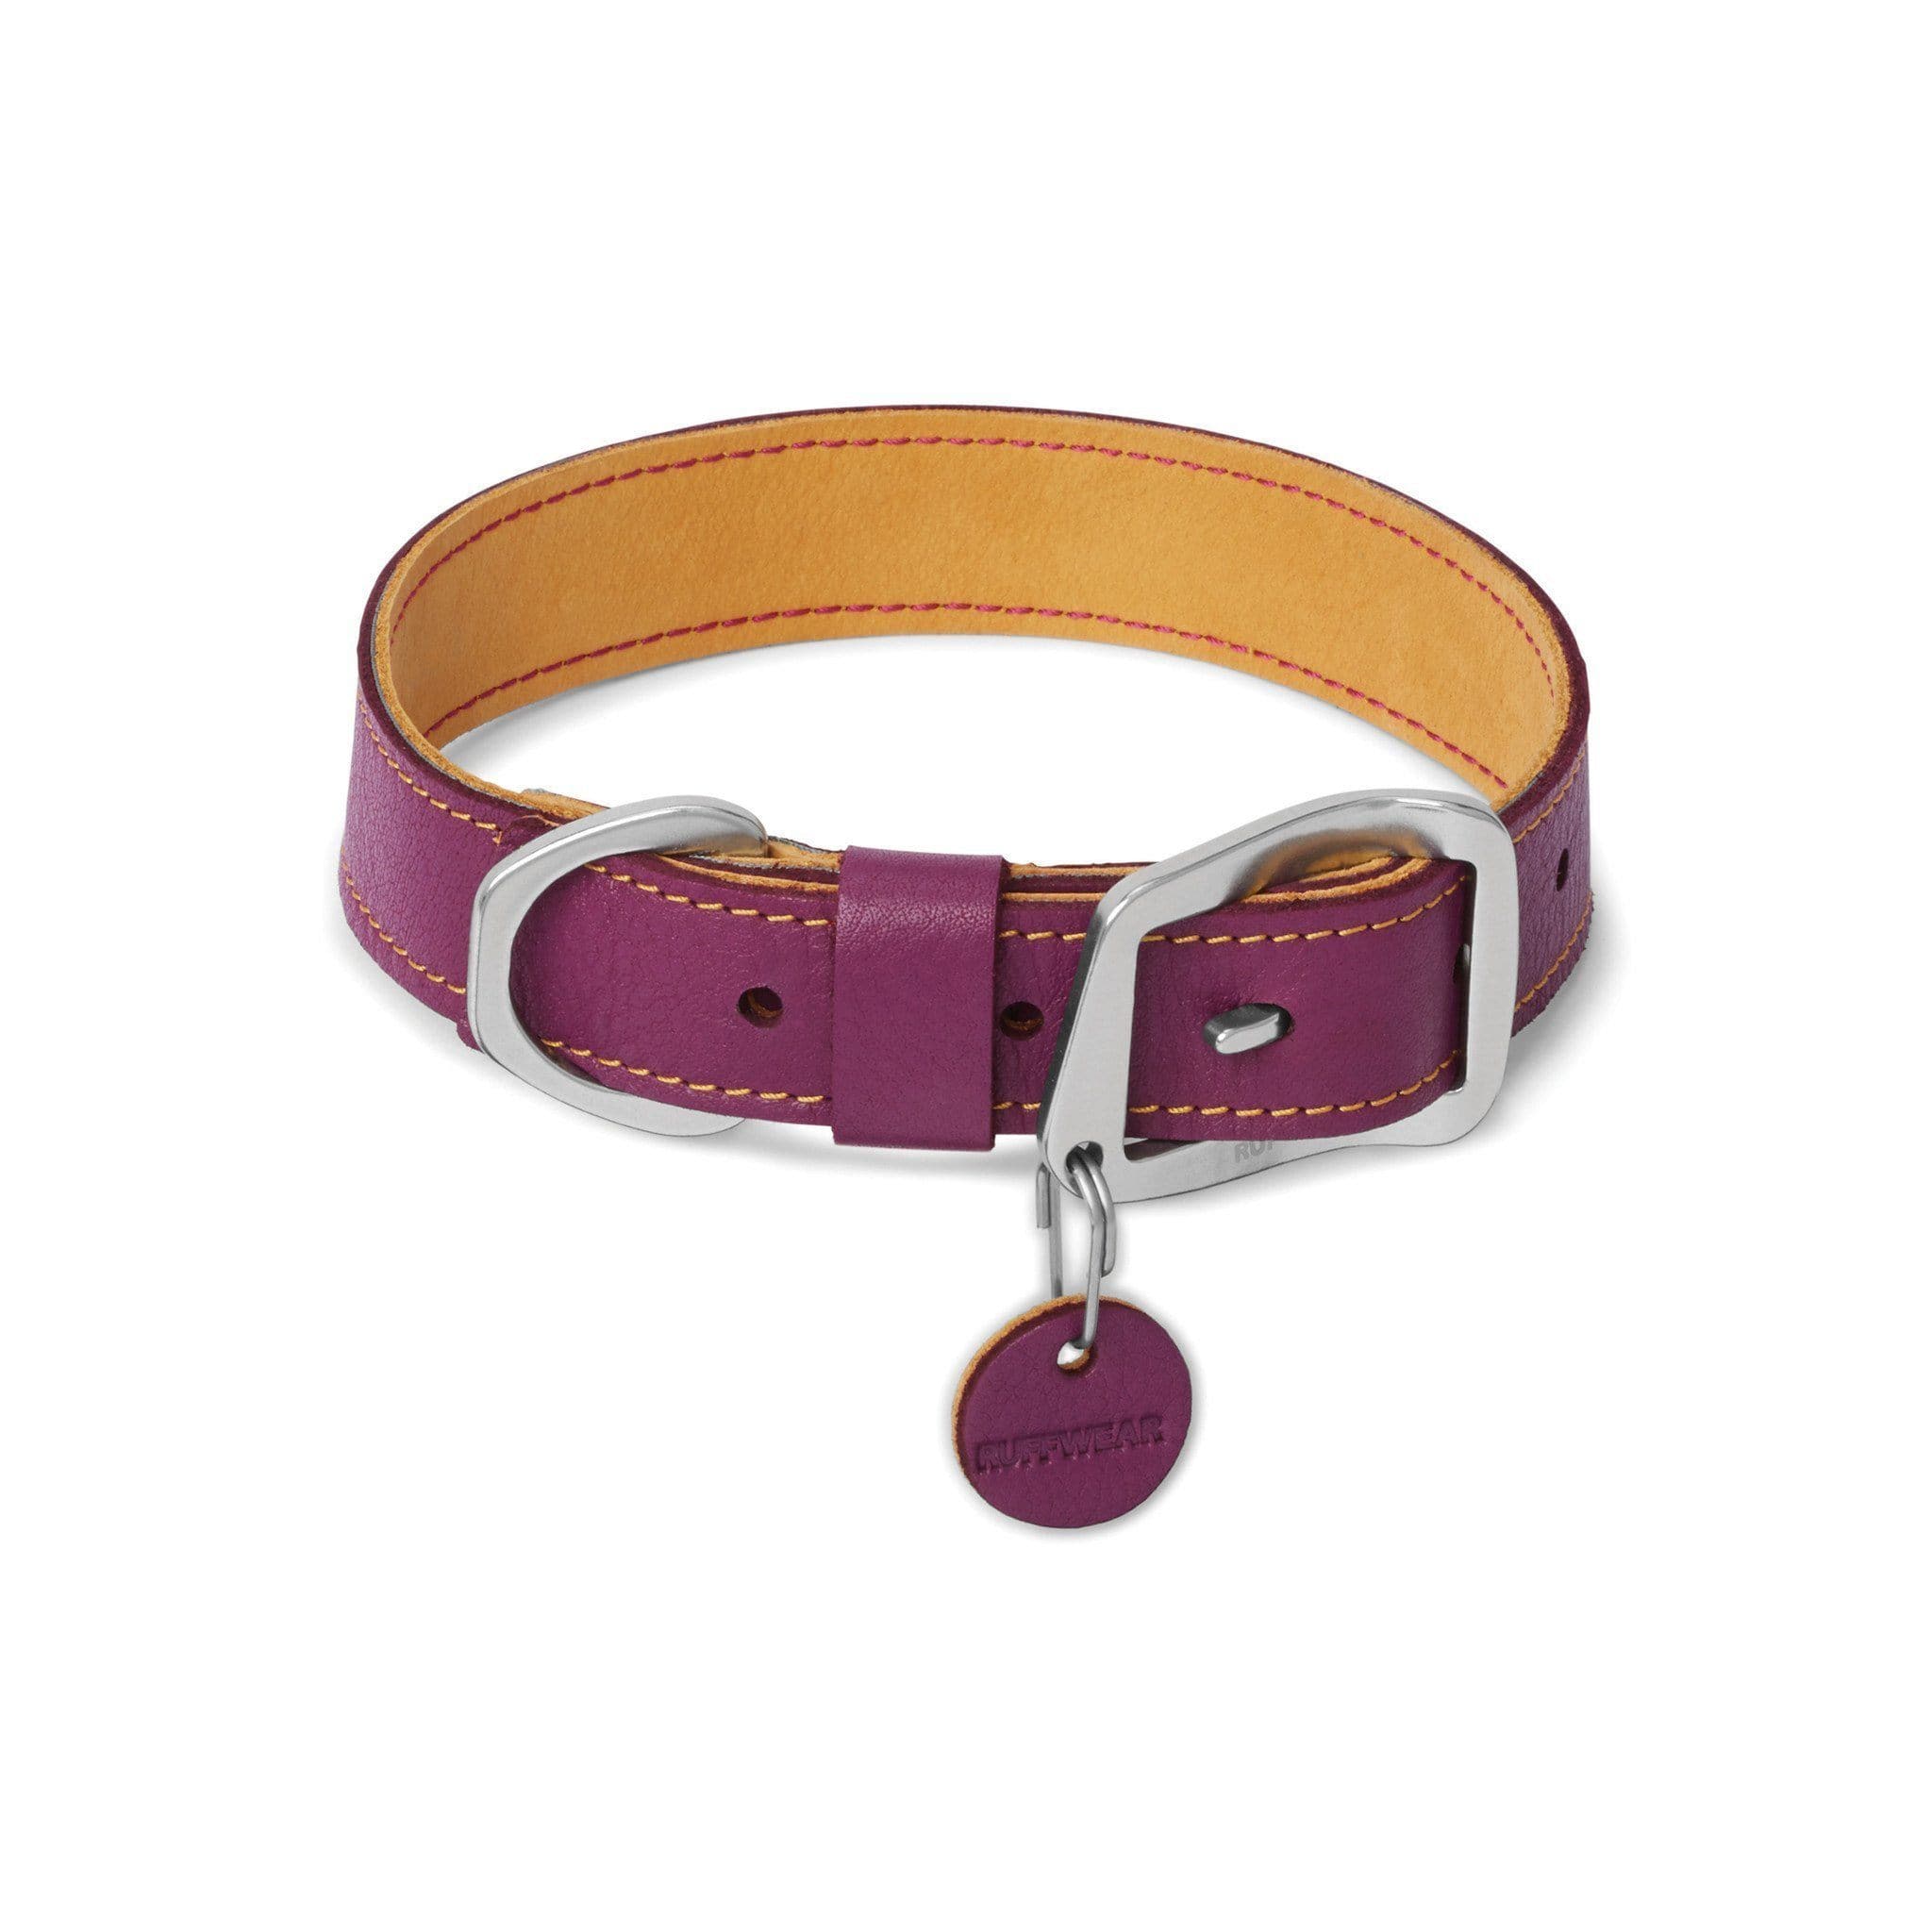 Collar de Cuero para Perros Modelo Timberline® Color Purpura - Ruffwear